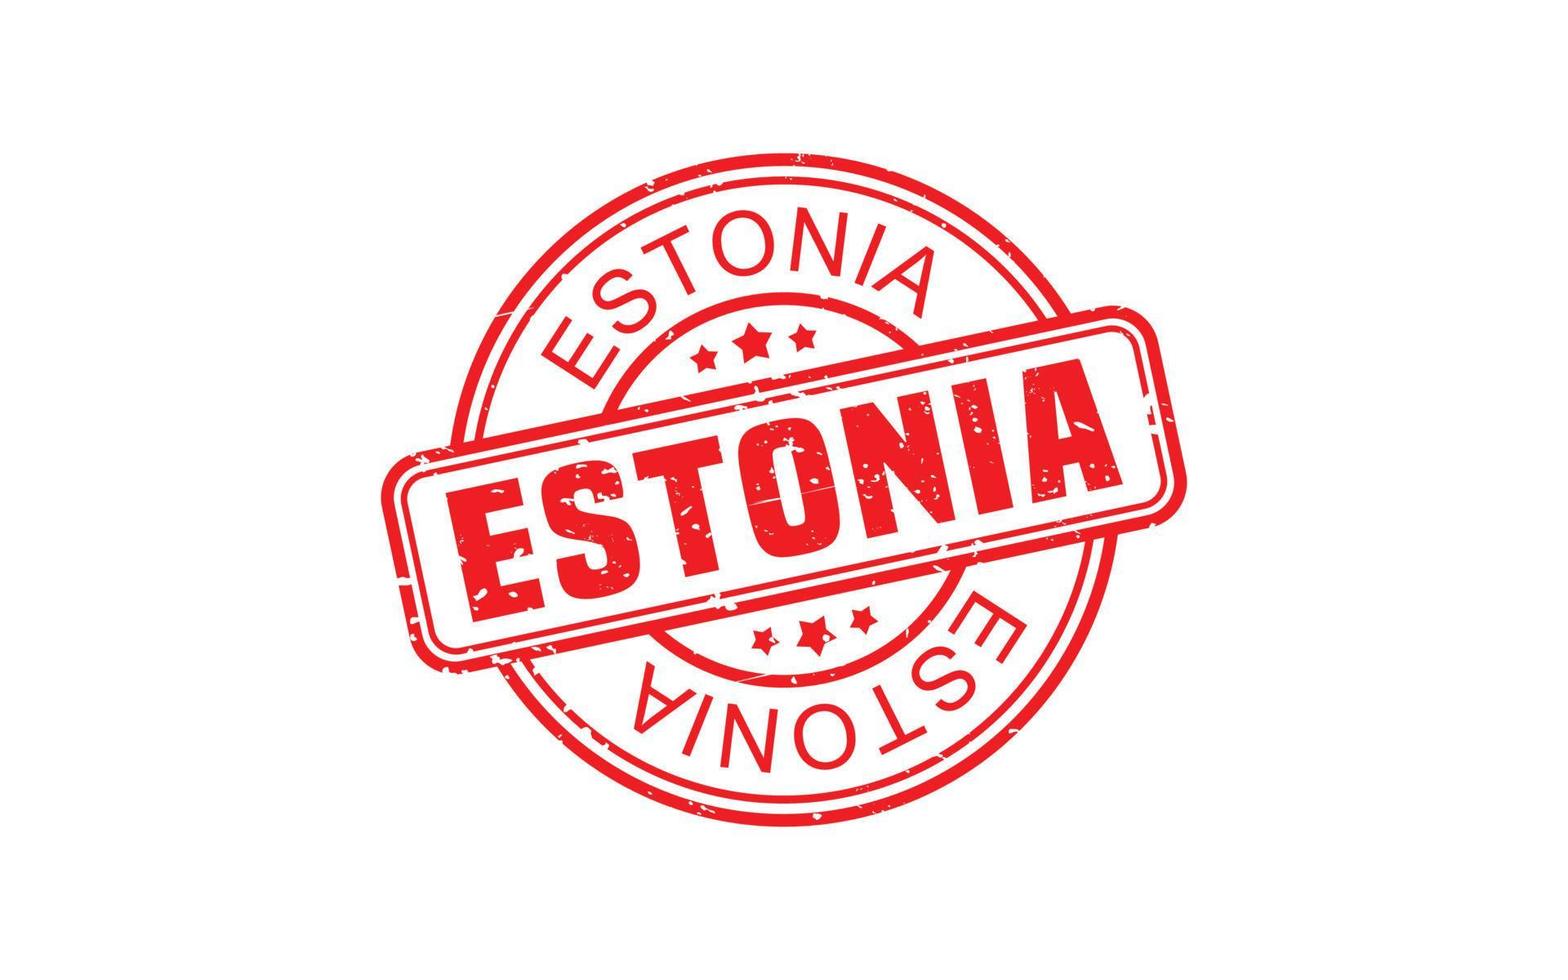 Estonia francobollo gomma da cancellare con grunge stile su bianca sfondo vettore